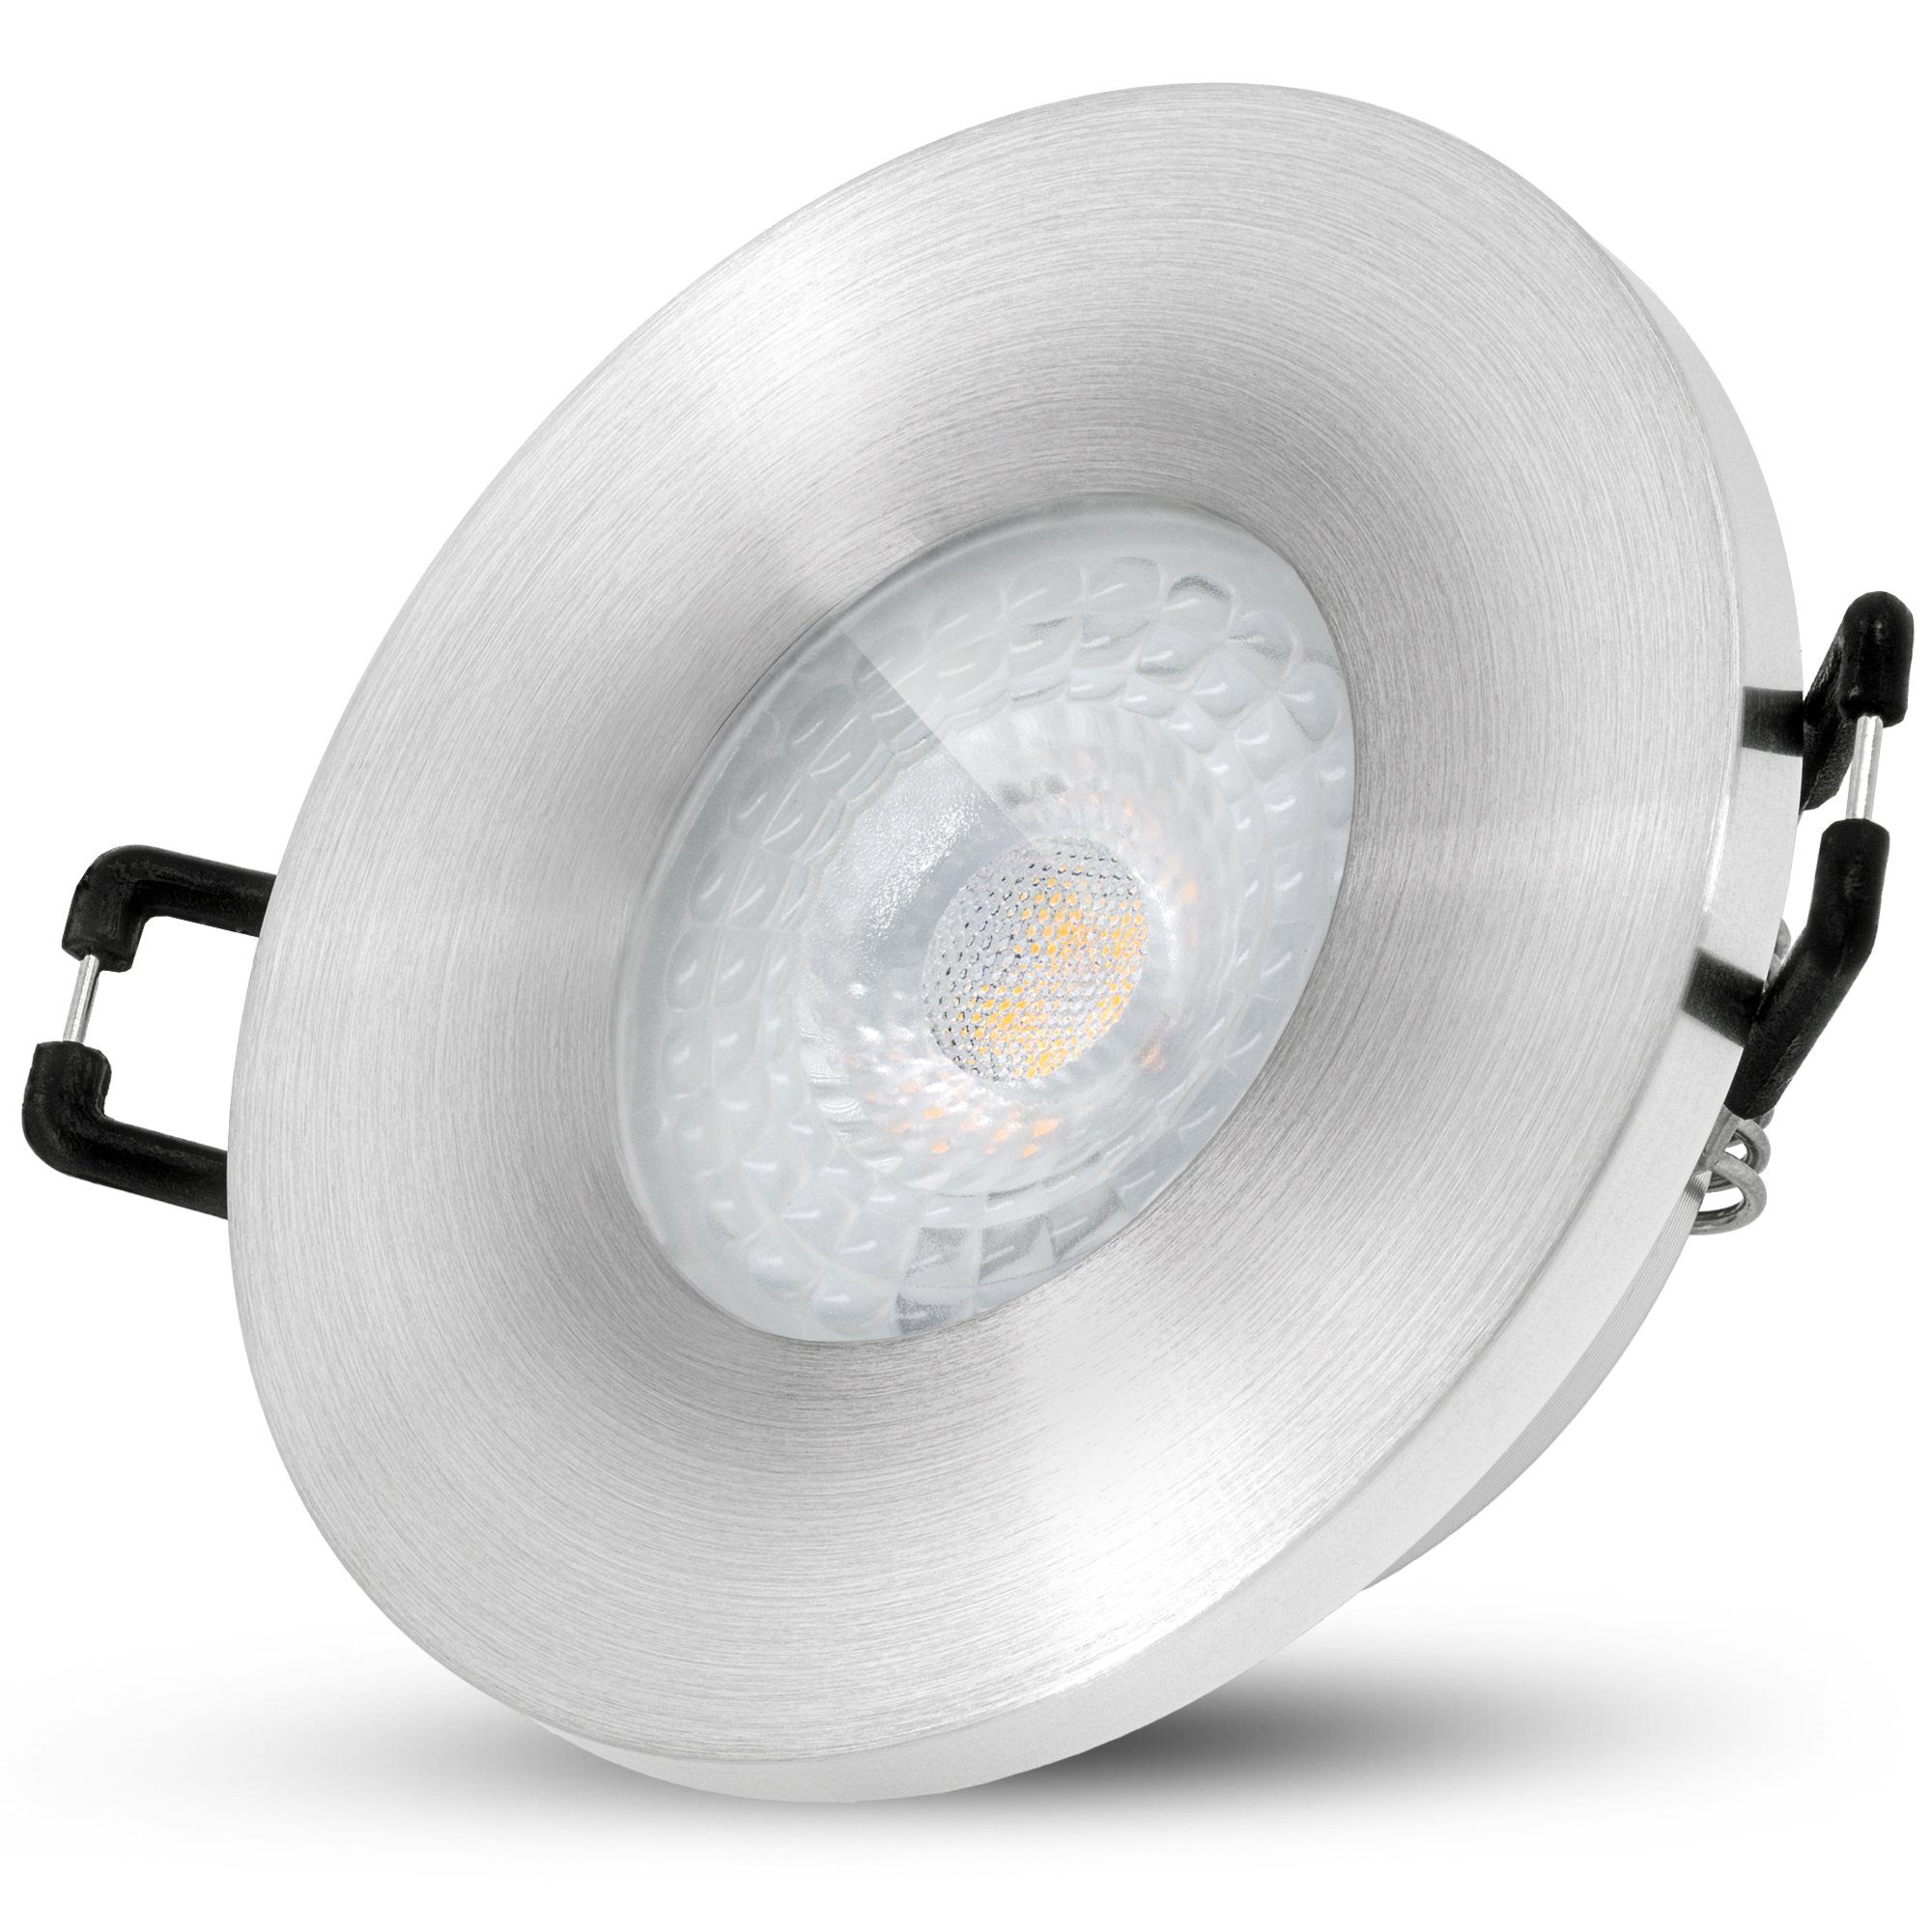 g, in Warmweiß SSC-LUXon warmweiss Einbauleuchte Lampe IP65 BEDA Außen-Deckenleuchte GU10 38° 230V 6W LED mit